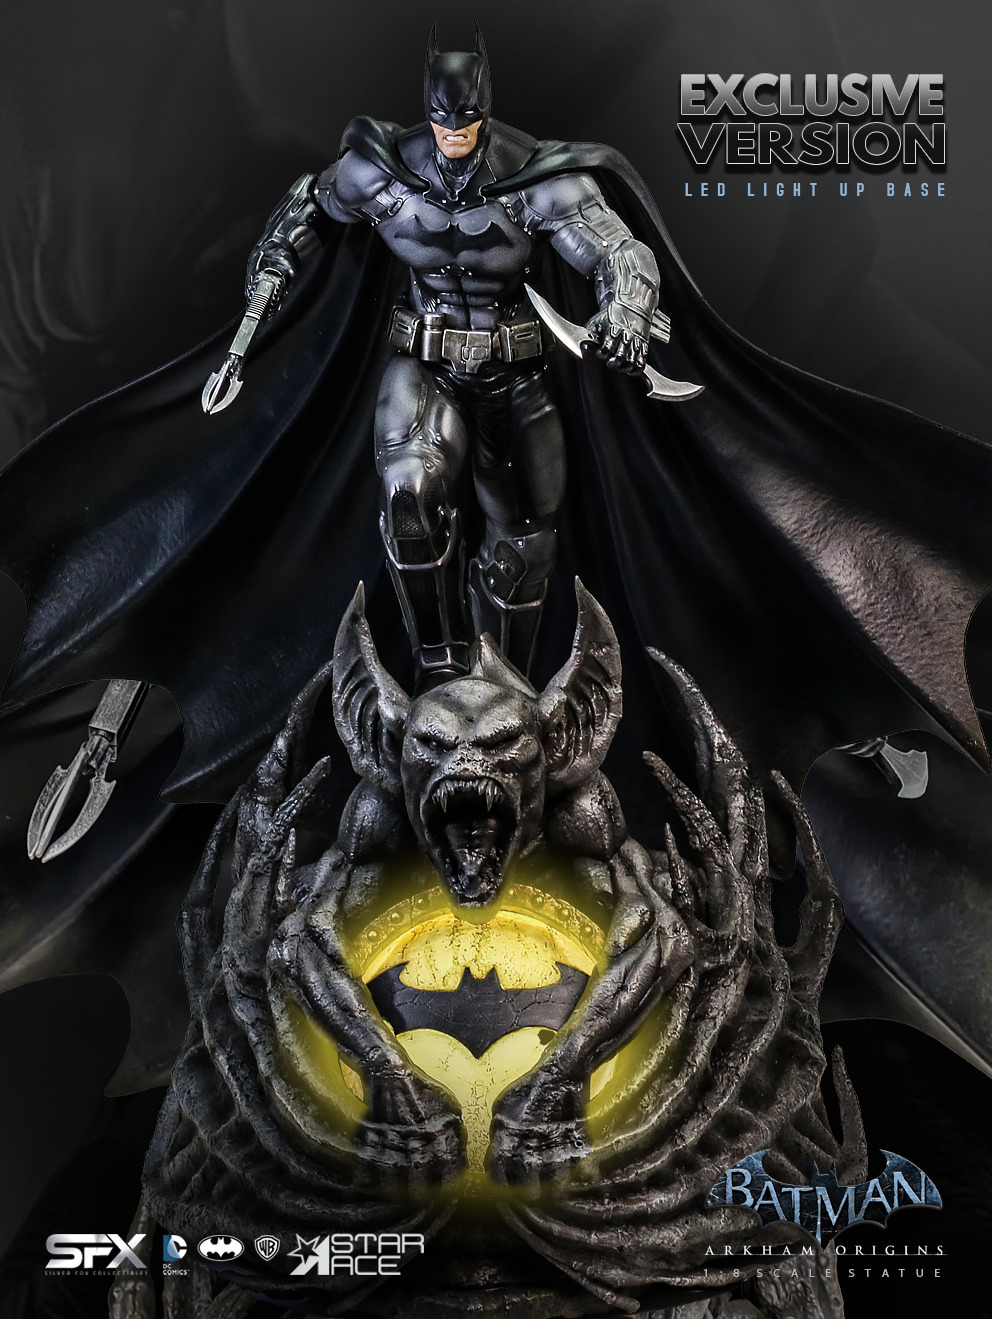 Batman Arkham Origins Exclusive Edition (Prototype Shown) View 3